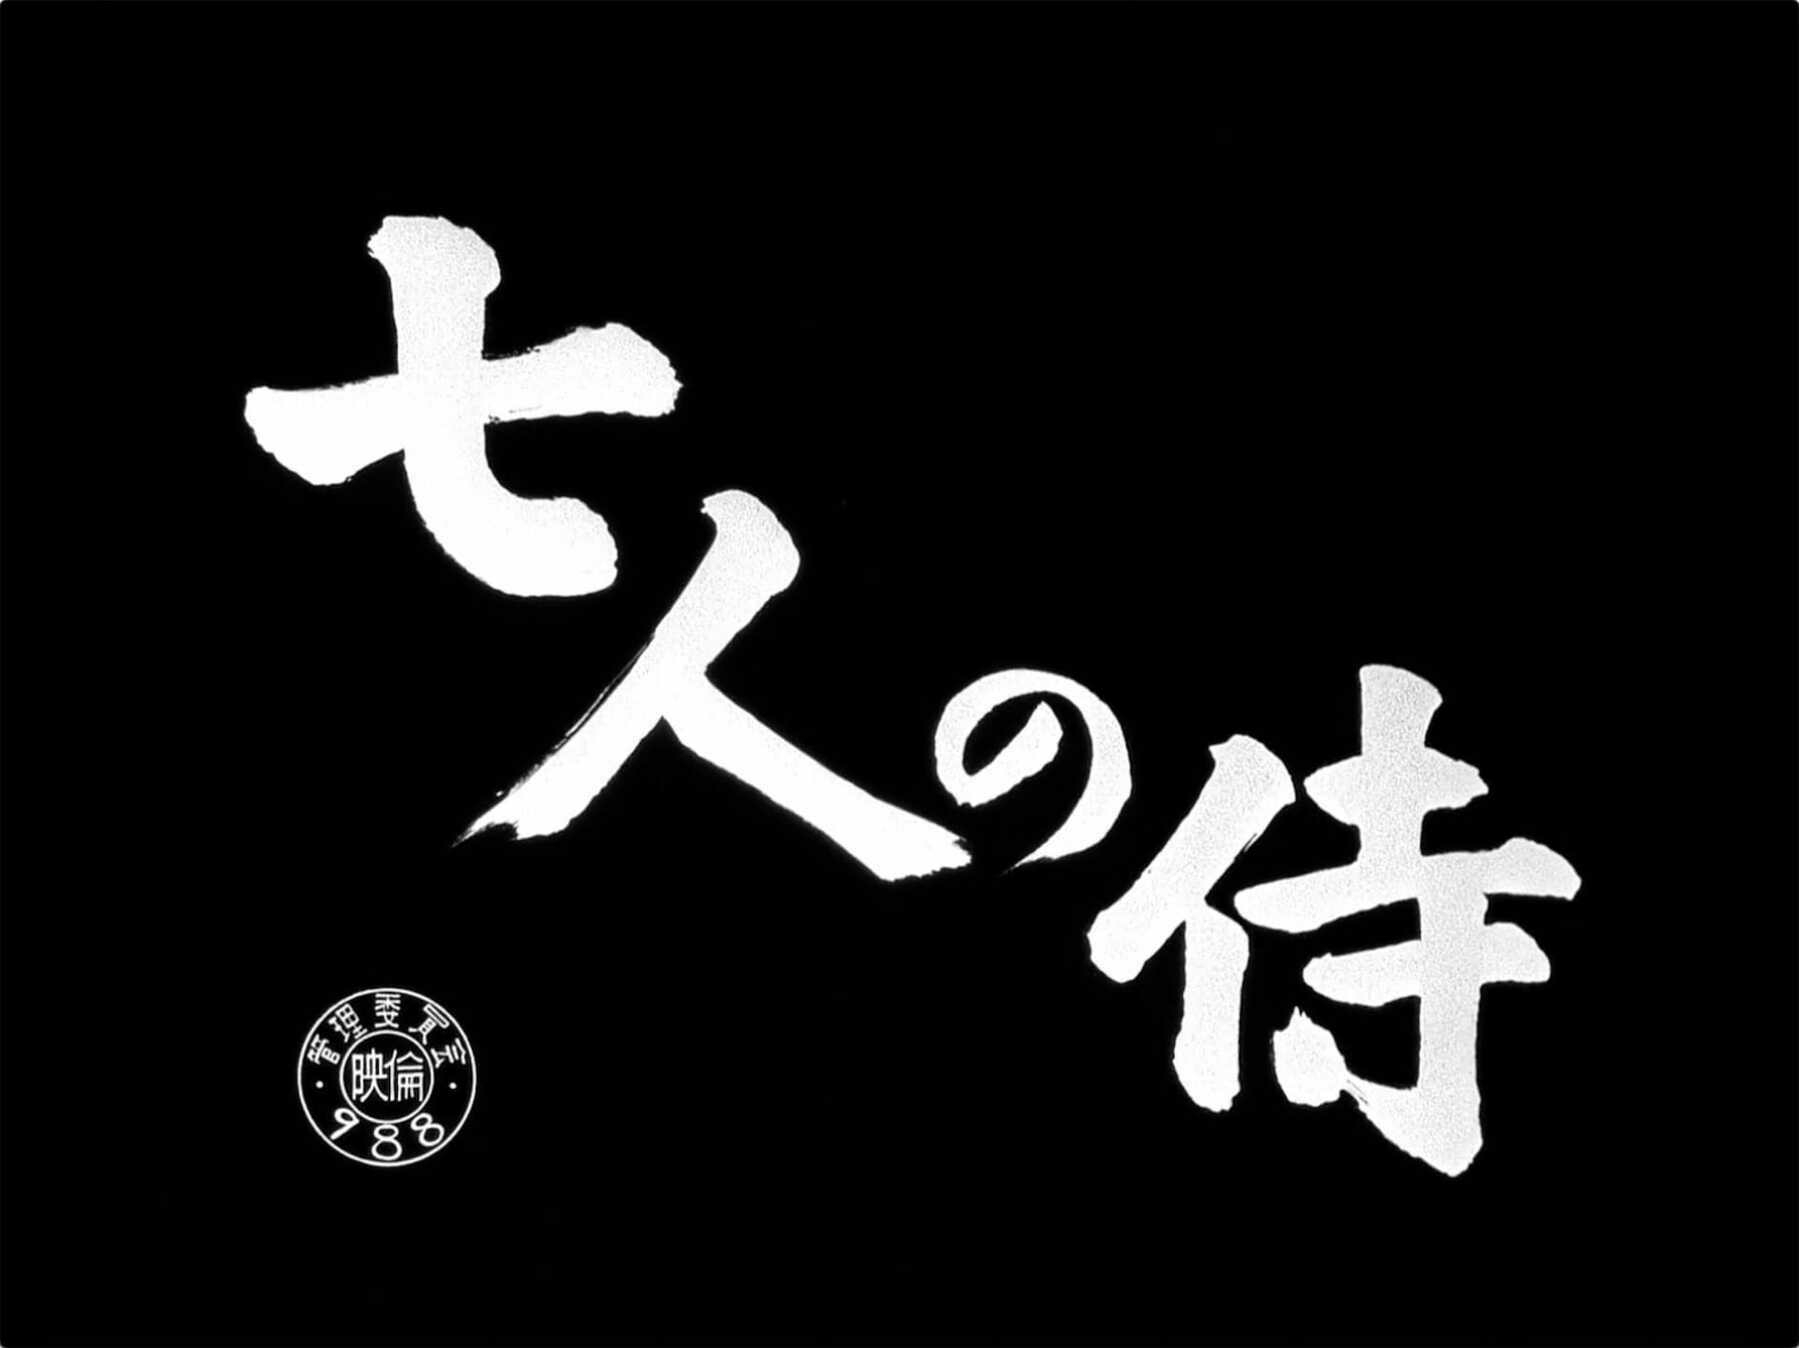 The title card for the film, Seven Samurai.